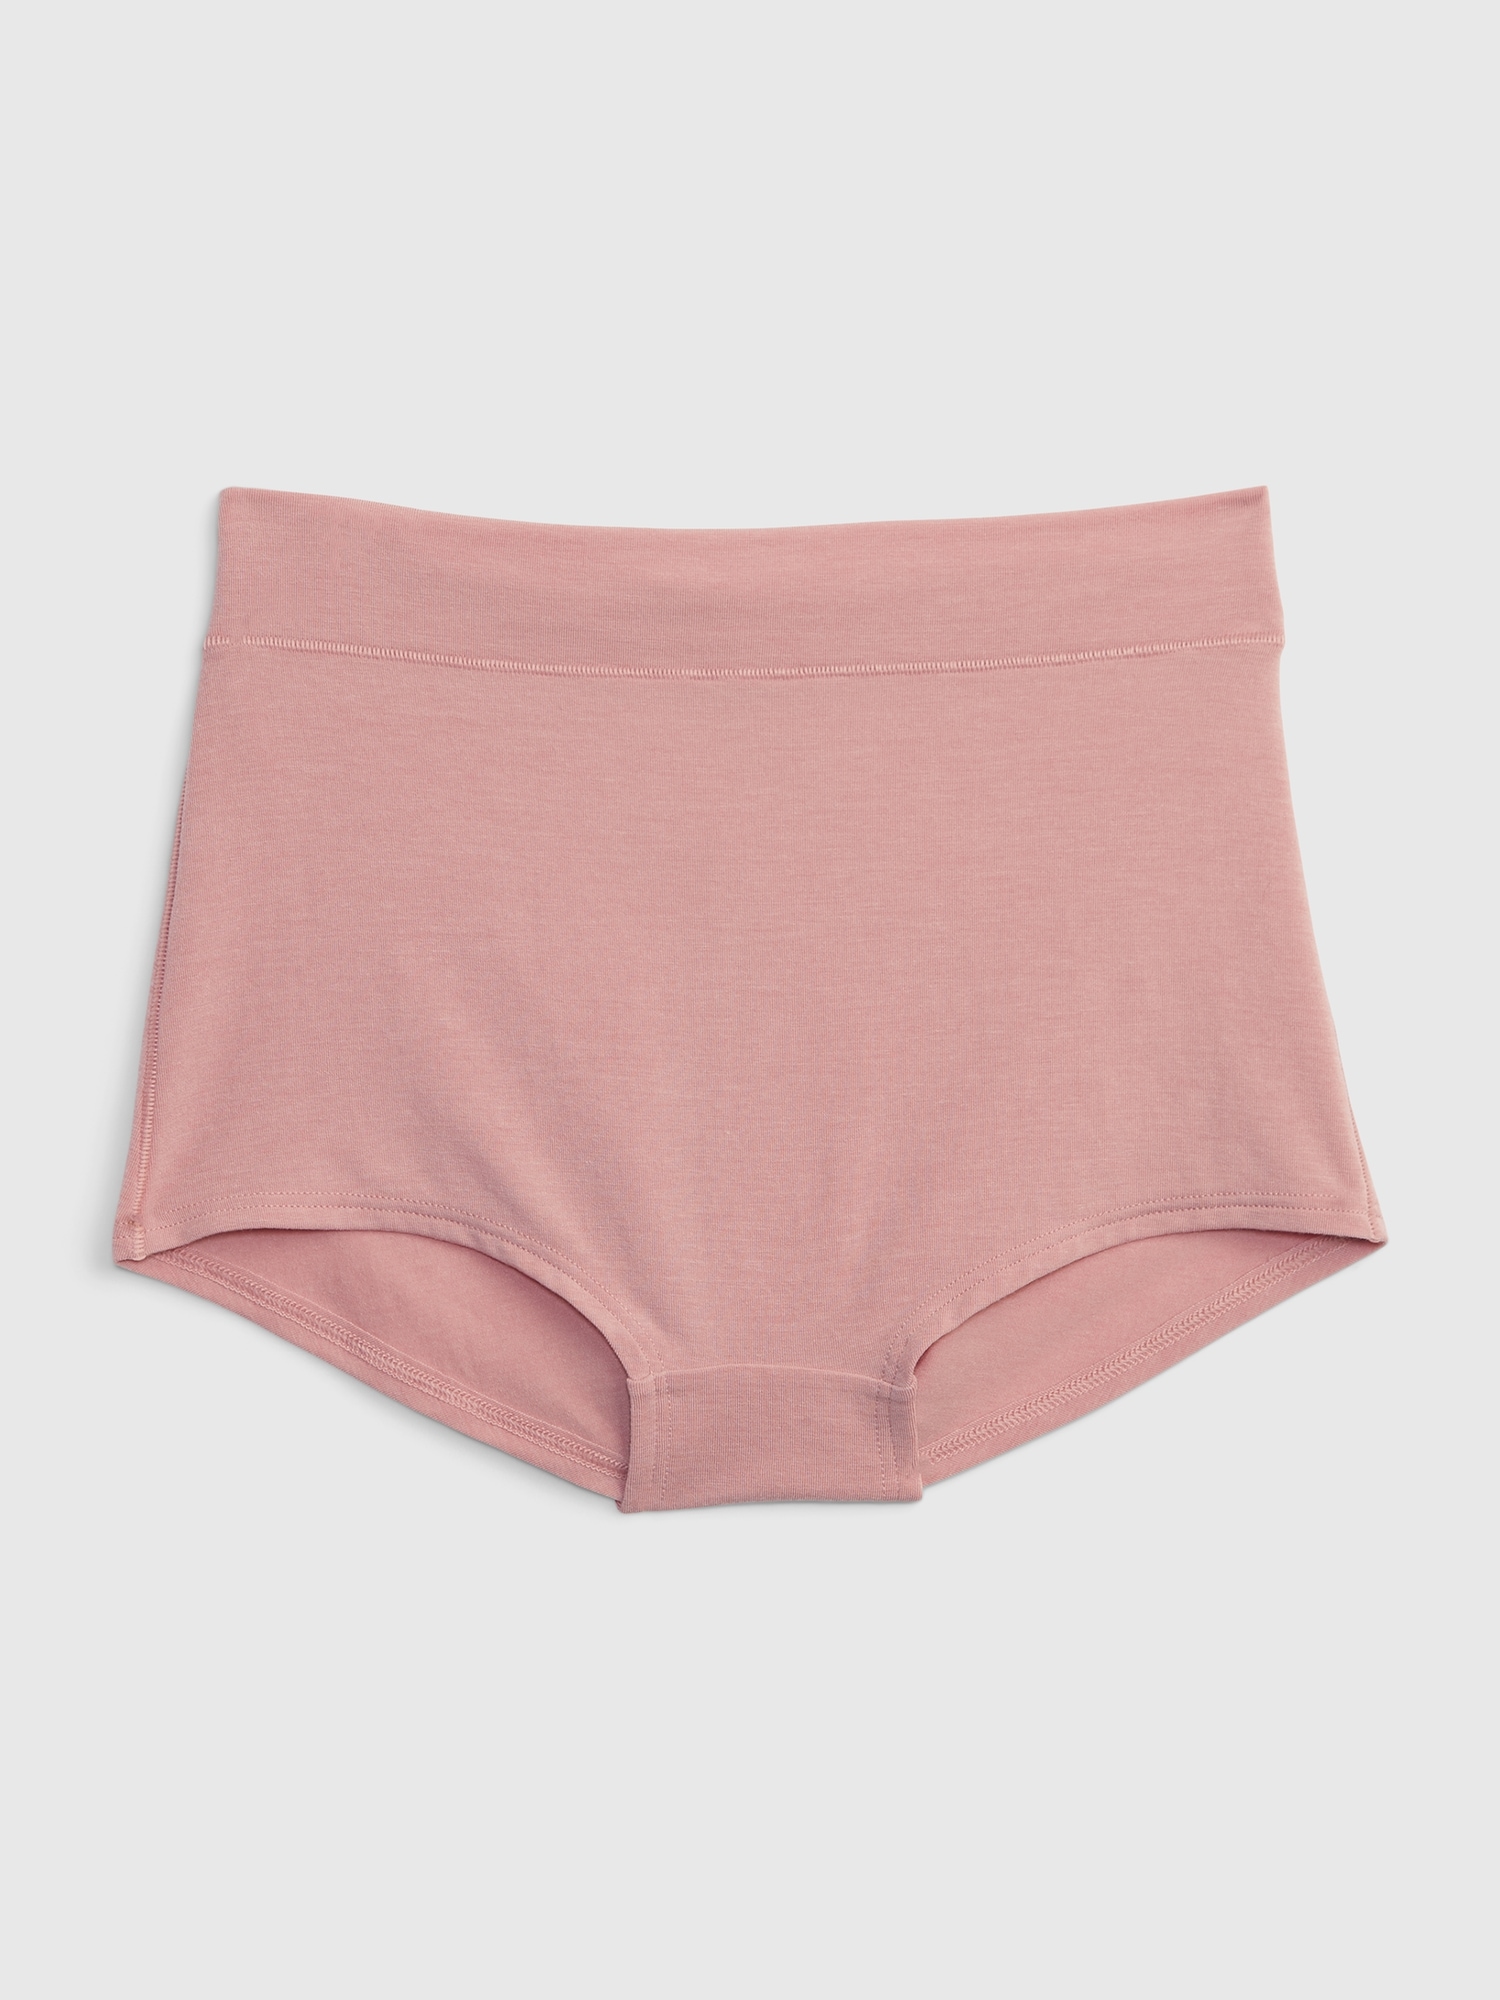 Gap Body Women's 3-pk Bikini Underwear Gpw00274 In Neutral Pink